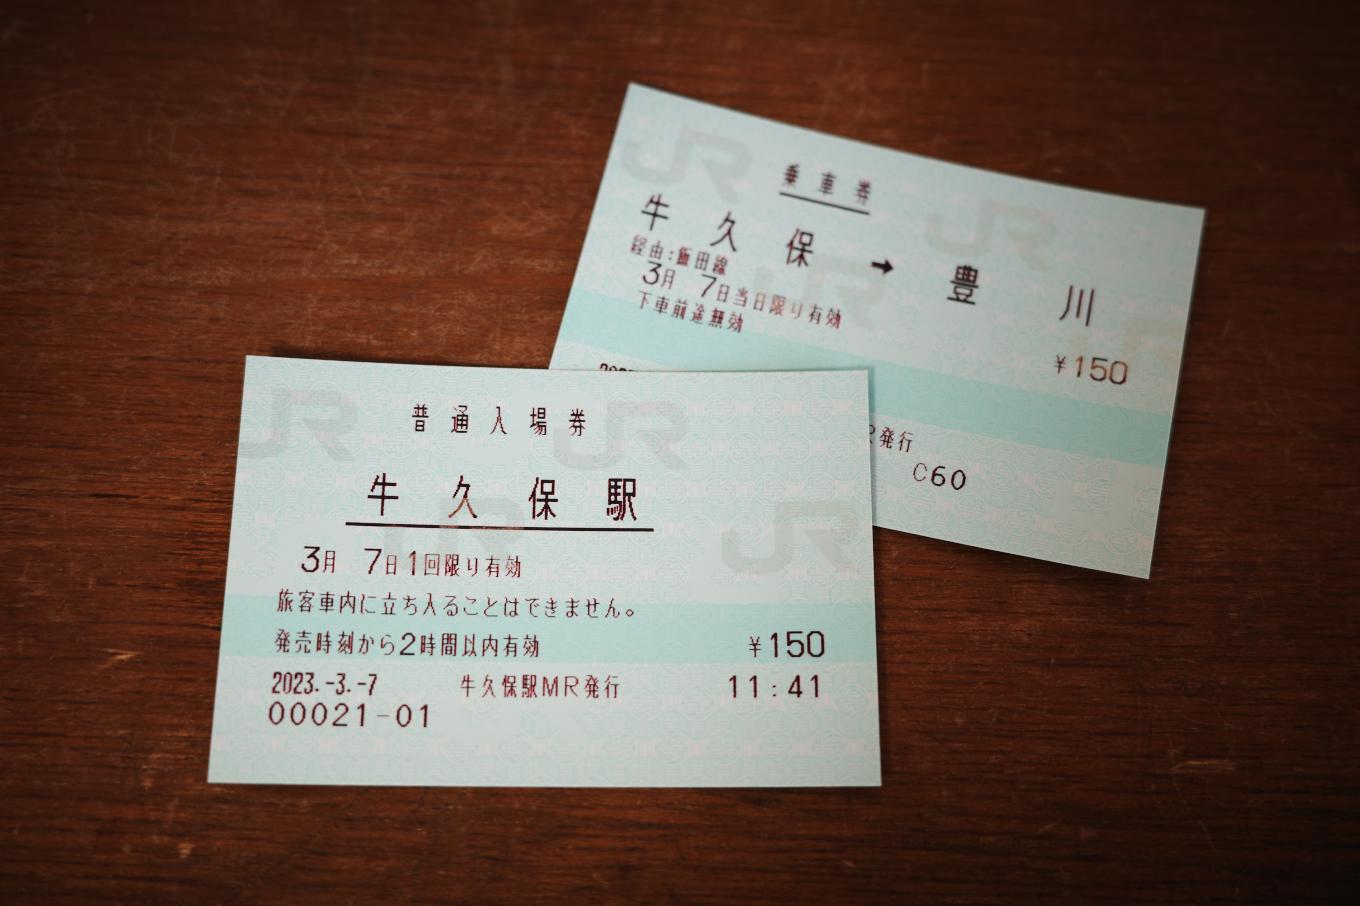 牛久保駅入場券と豊川までの乗車券。